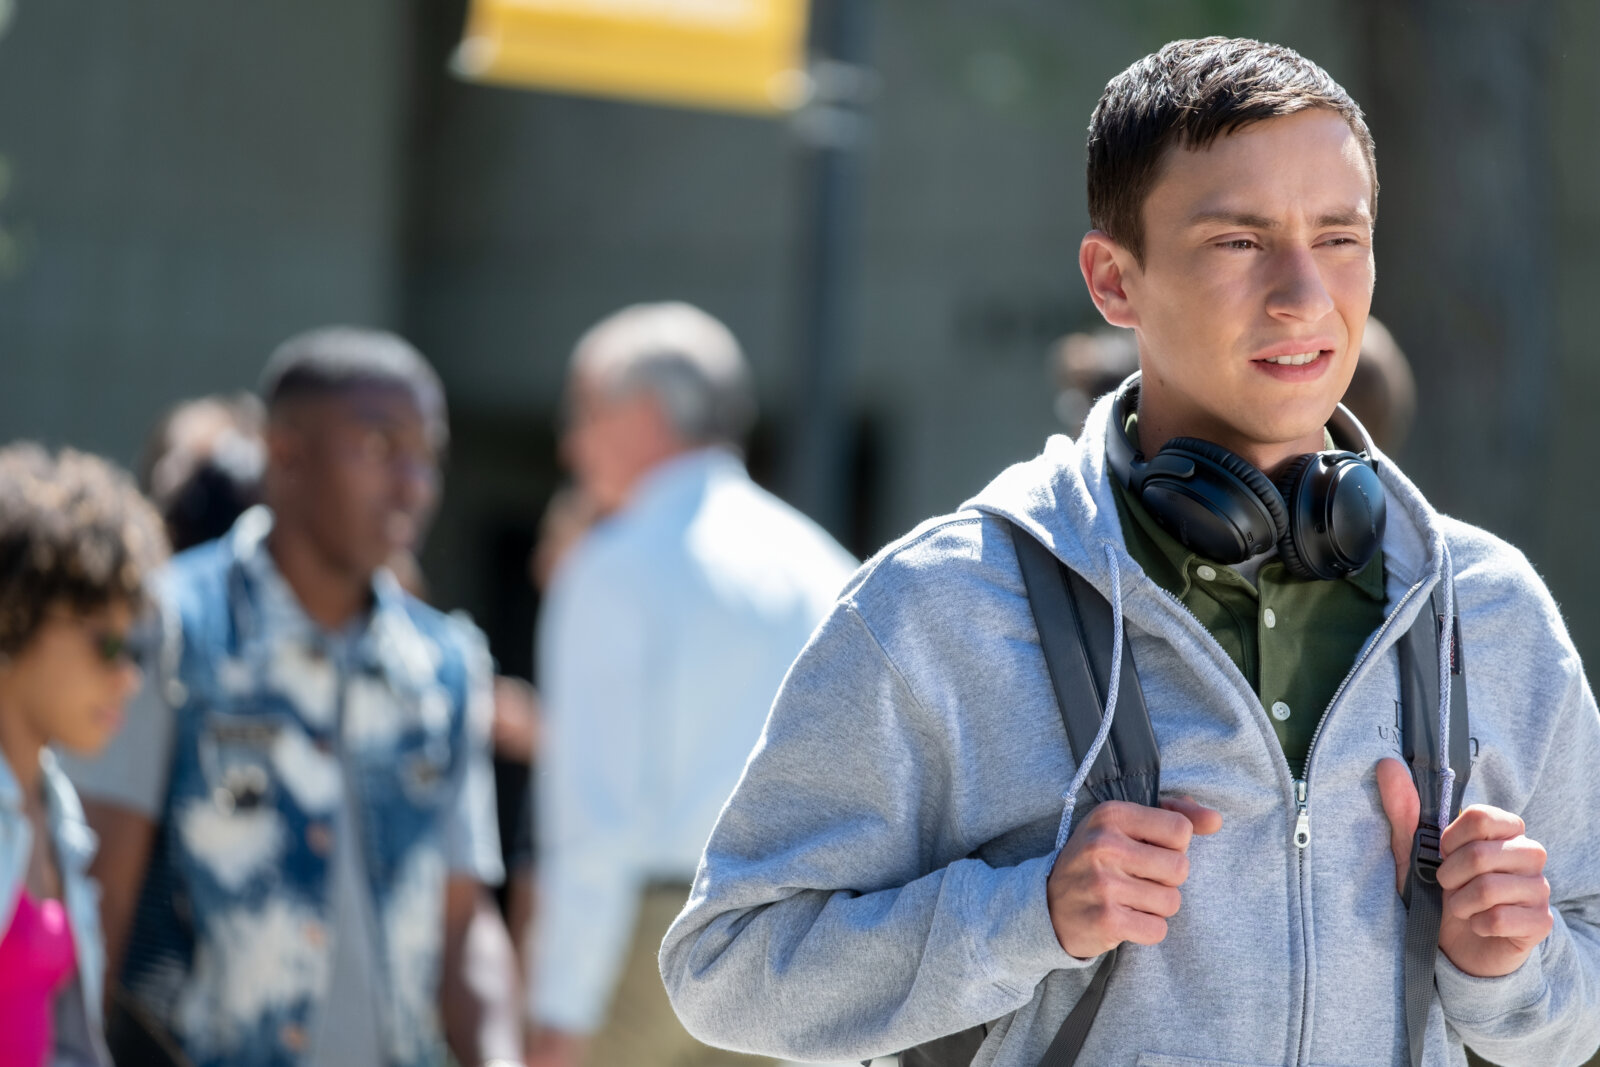 Keir Gilchrist spielt in der hochgelobten Netflix-Comedy-Drama Serie Atypical den autistischen Teenager Sam Gardener.